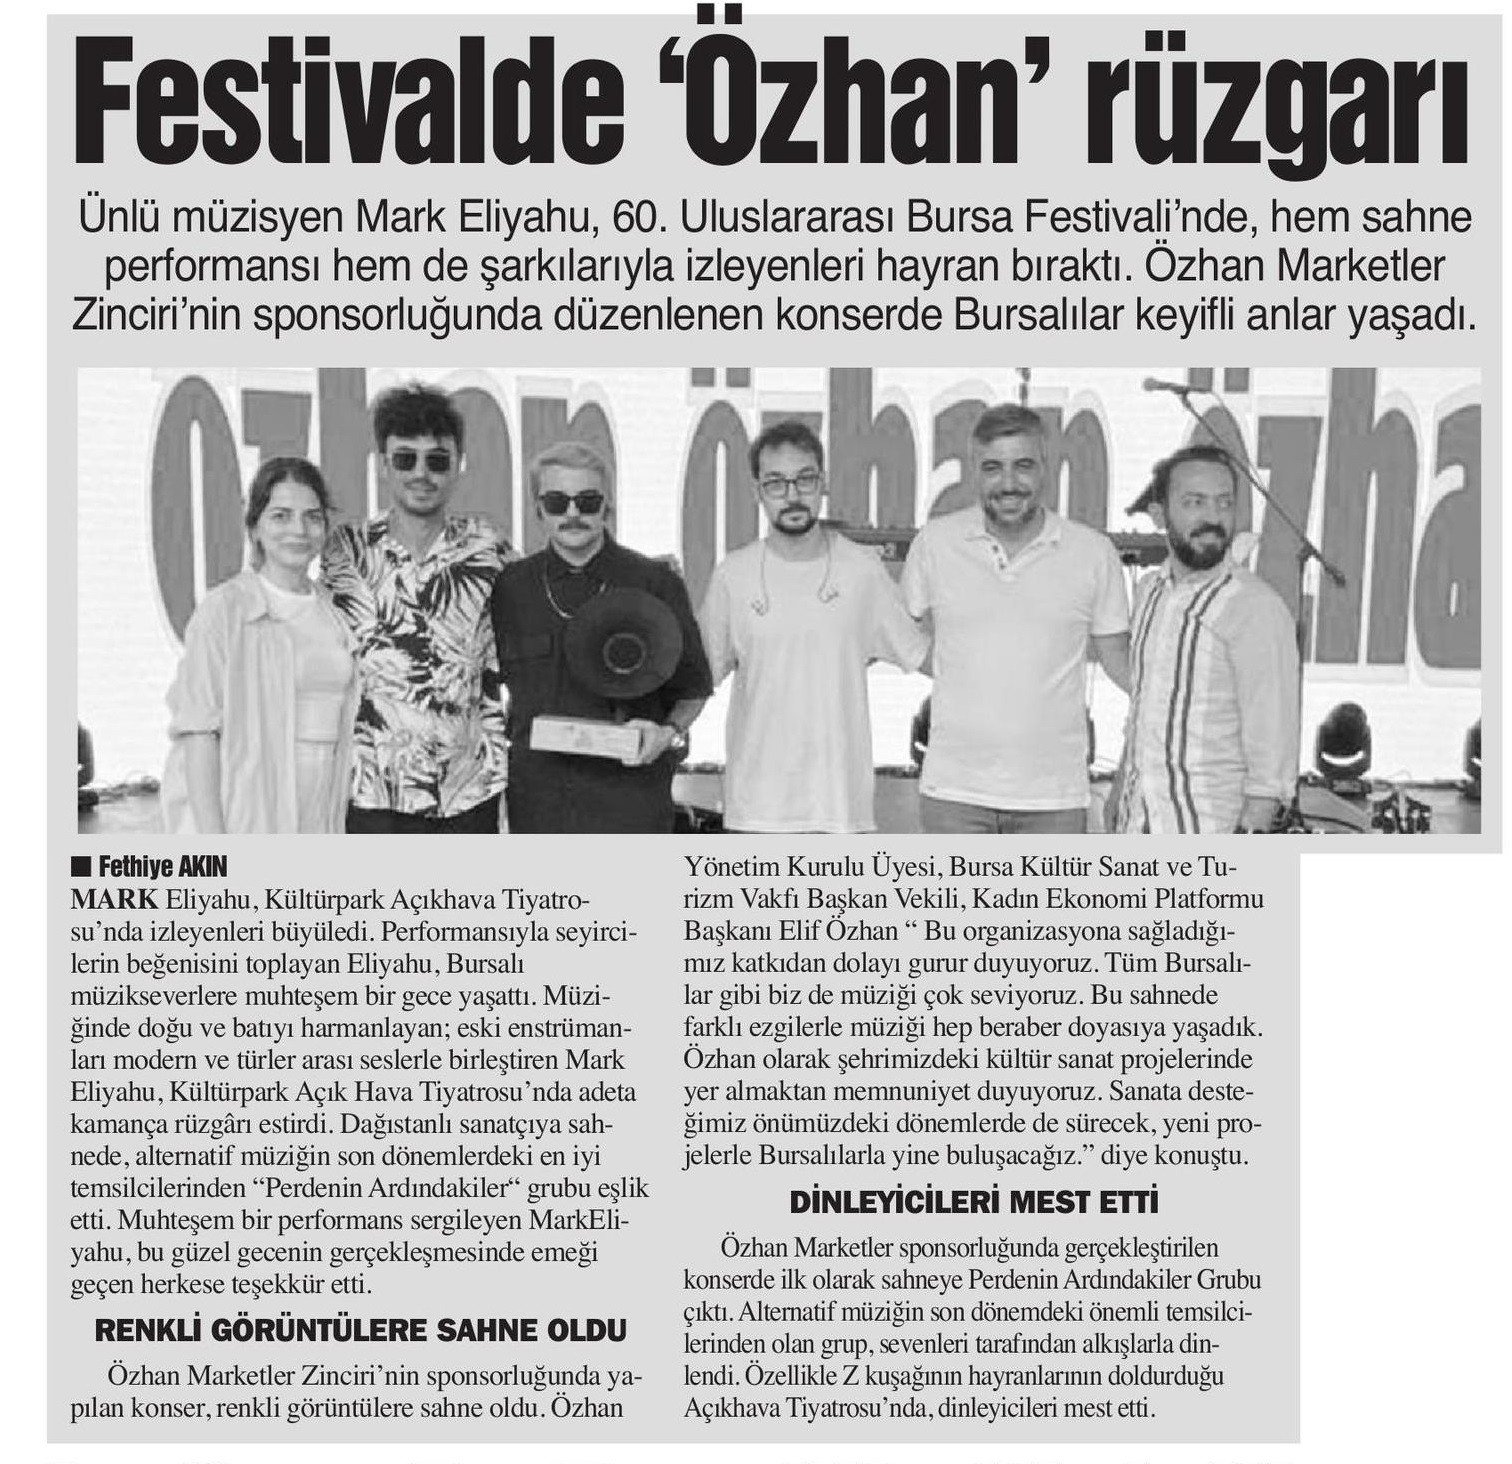 Festivalde 'Özhan' Rüzgarı